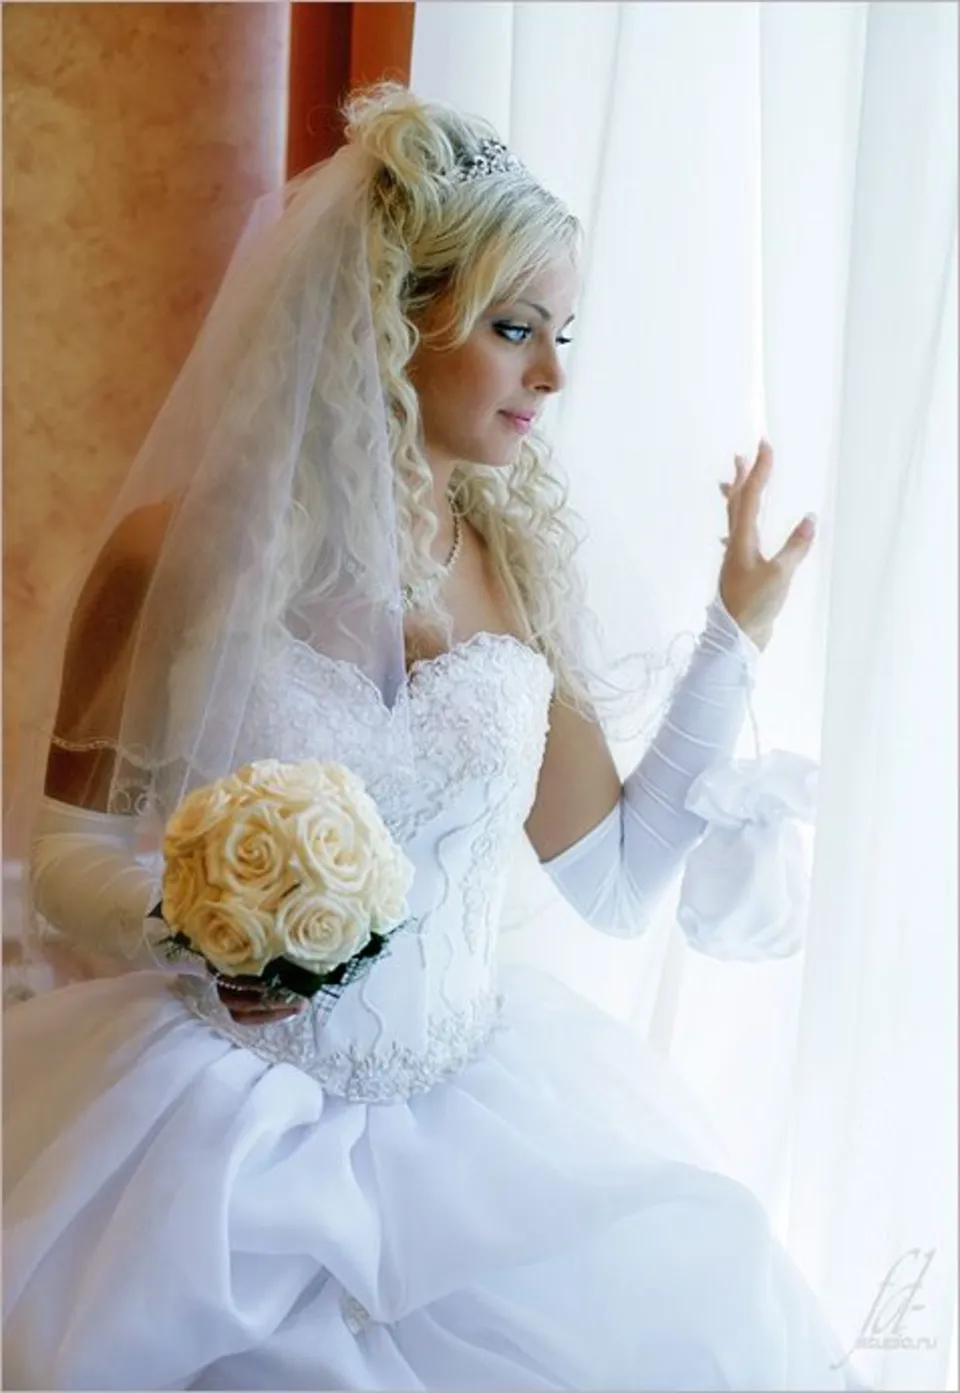 Красивая невеста